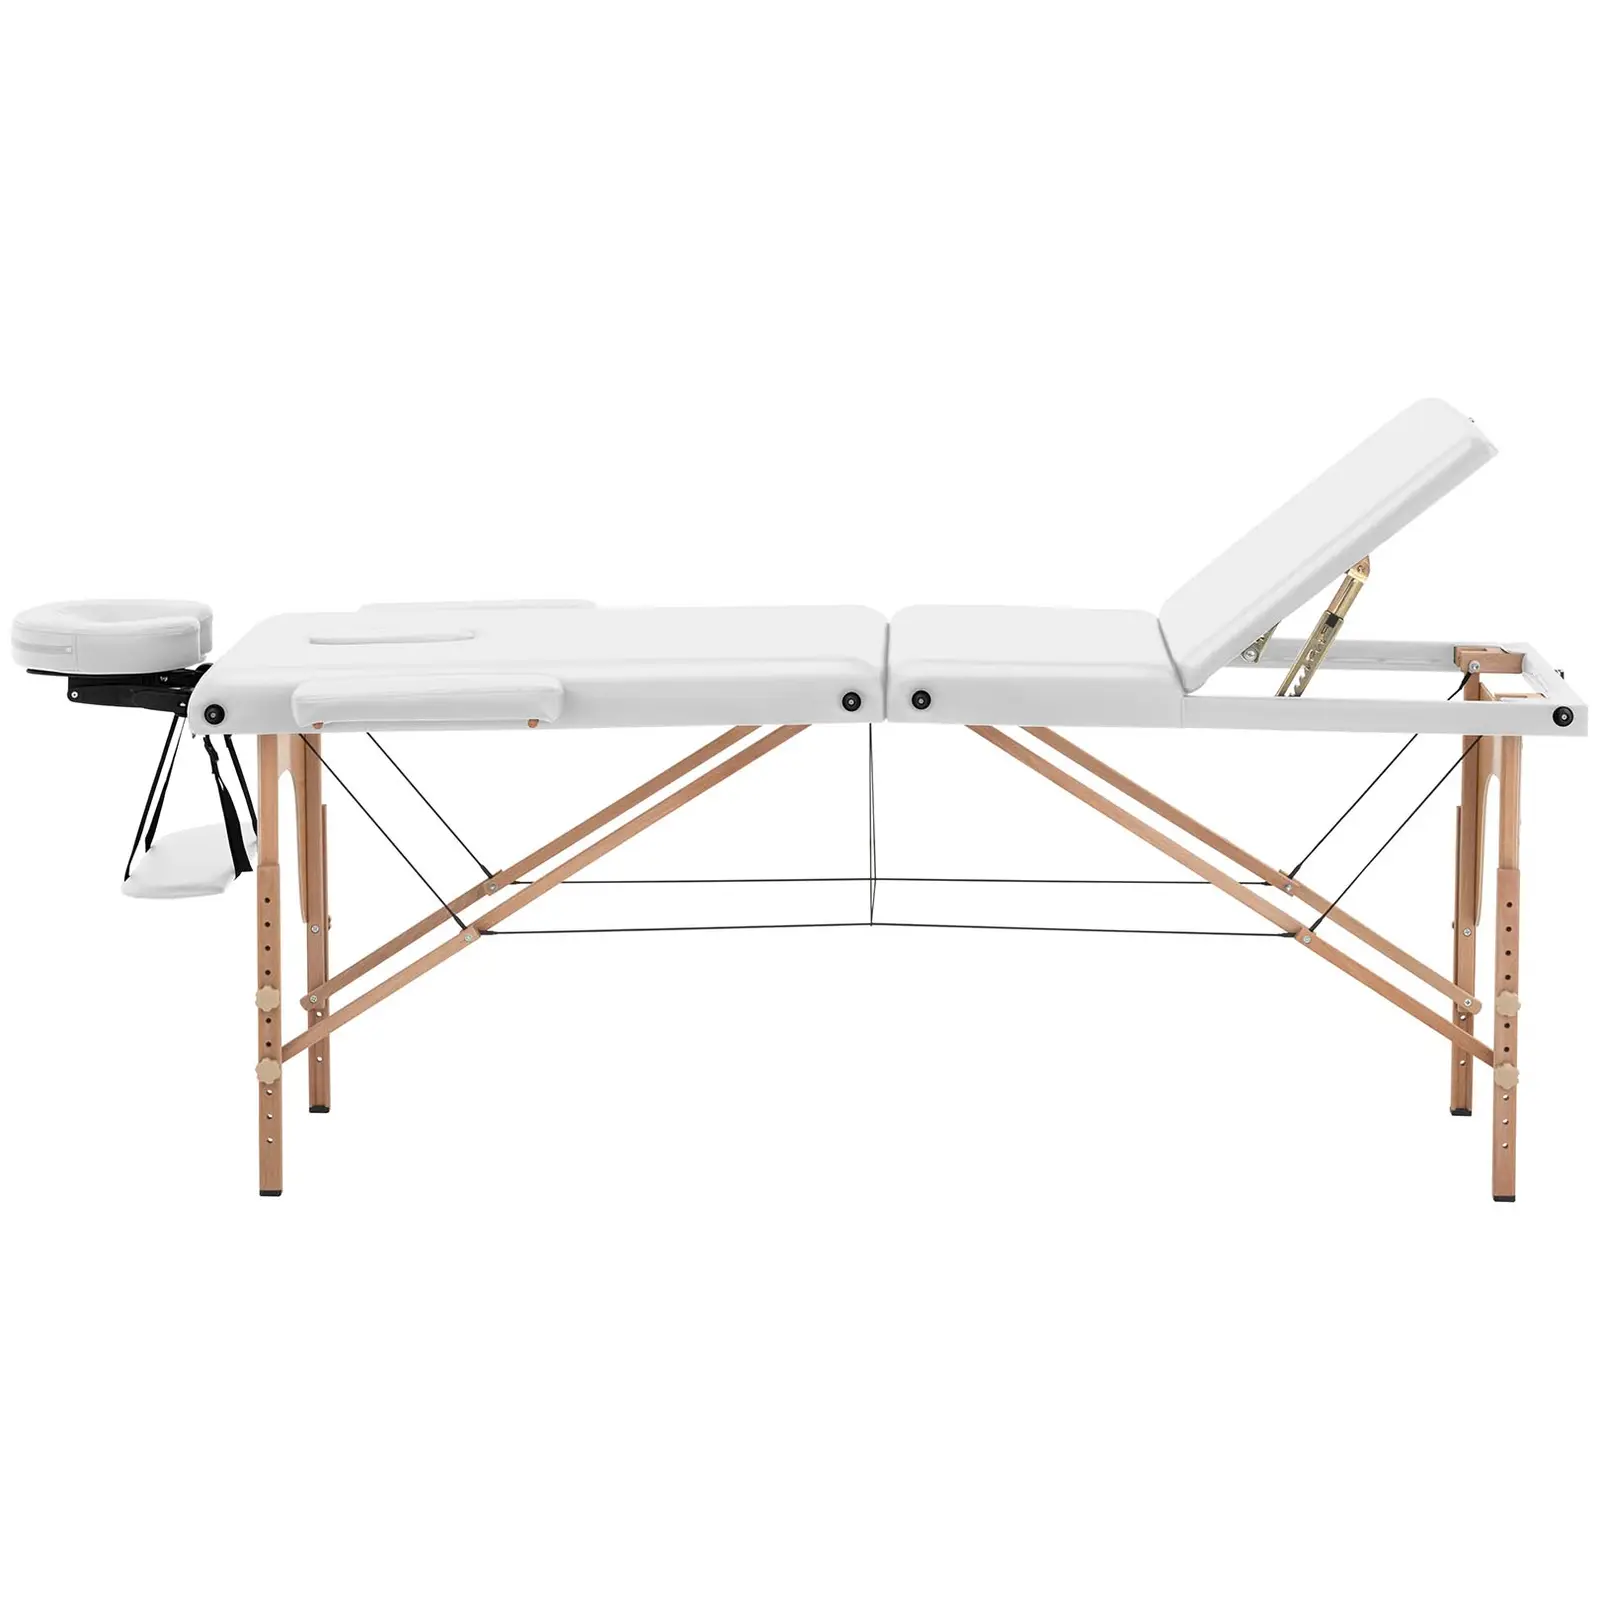 Masážny stôl rozkladací - extra široký (70 cm) - sklopná opierka nôh - bukové drevo - biela